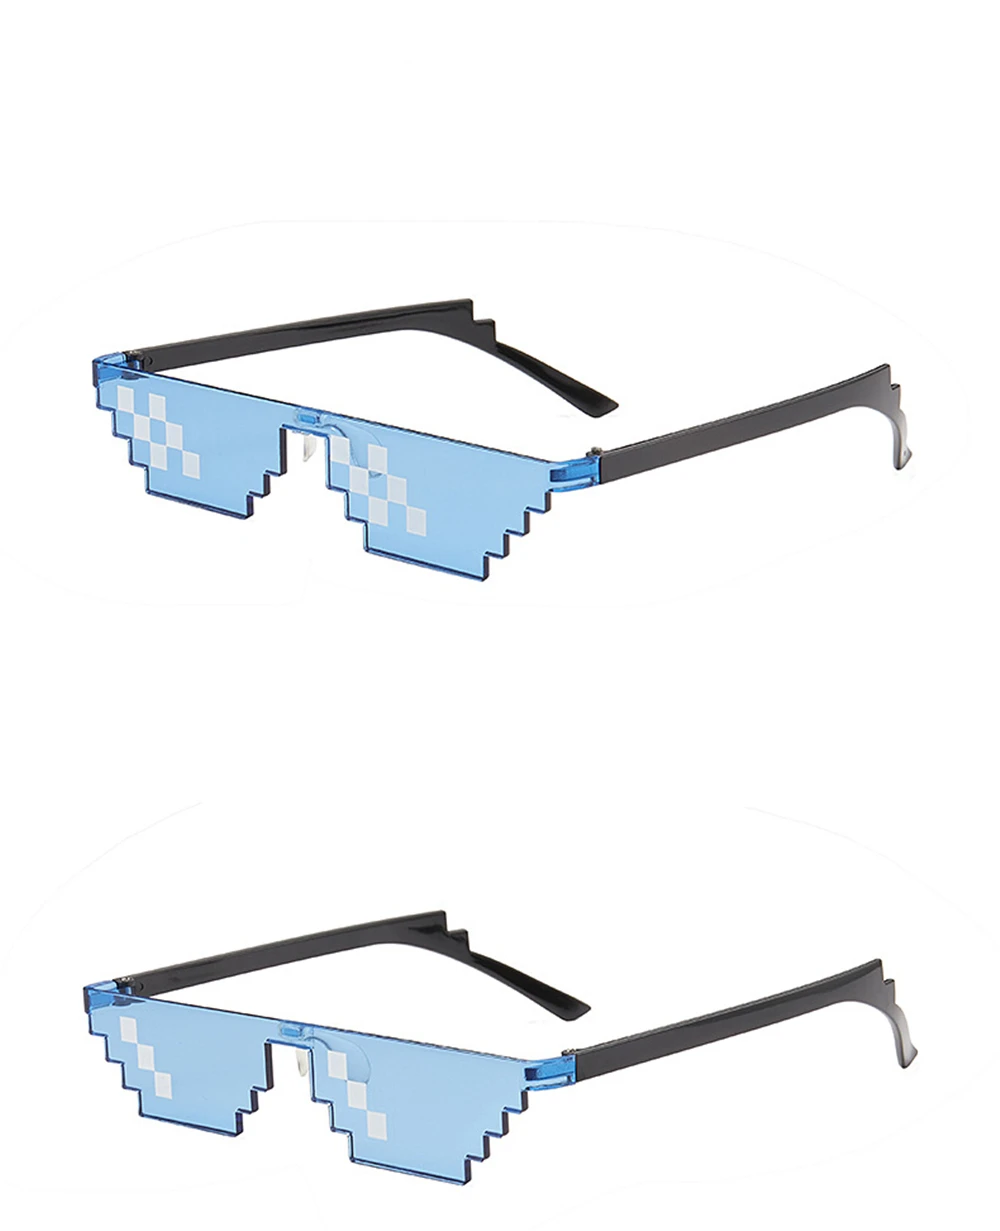 8 Bit Thug Life солнцезащитные очки для мужчин и женщин, Брендовые очки для вечеринки, мозаика, UV400, винтажные очки, унисекс, подарок, игрушка, очки